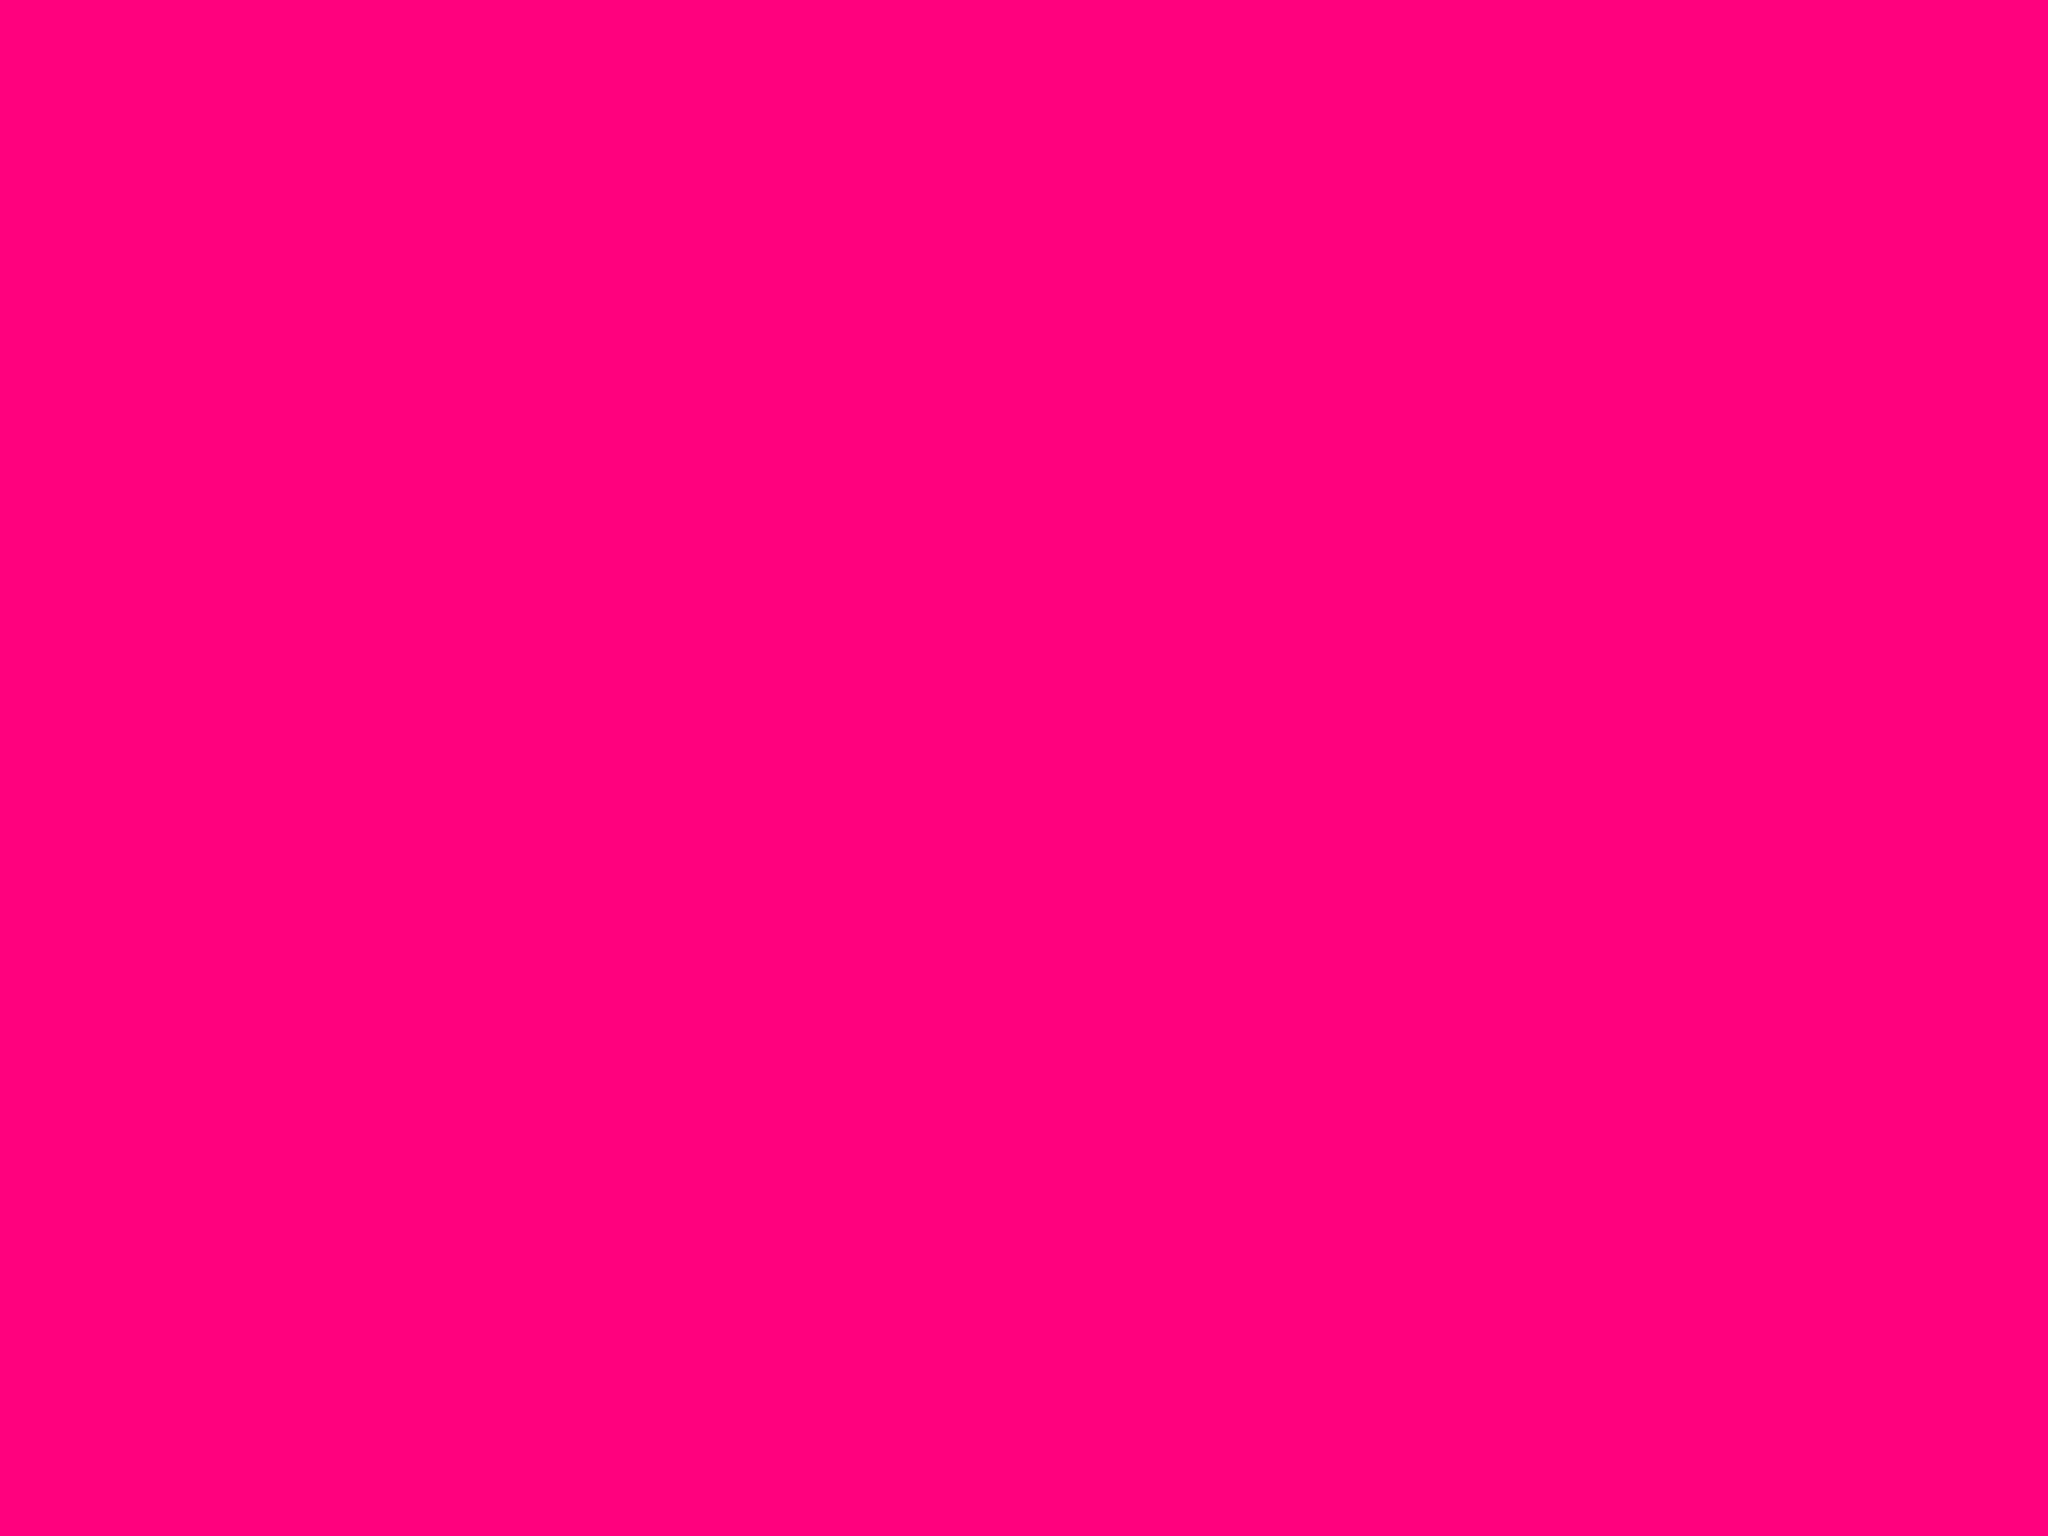 Thiết kế của hình nền hồng nóng đầy sức sống và mạnh mẽ. Sắc màu hồng láng và tràn đầy năng lượng giúp bức ảnh trở nên nổi bật hơn. Nếu bạn yêu thích màu hồng nóng, hãy xem bức ảnh này để cảm nhận sức mạnh của màu sắc. Translation: The design of the hot pink background is full of vitality and strength. The vibrant and energetic pink color makes the image more prominent. If you love hot pink color, check out this image to feel the power of colors.